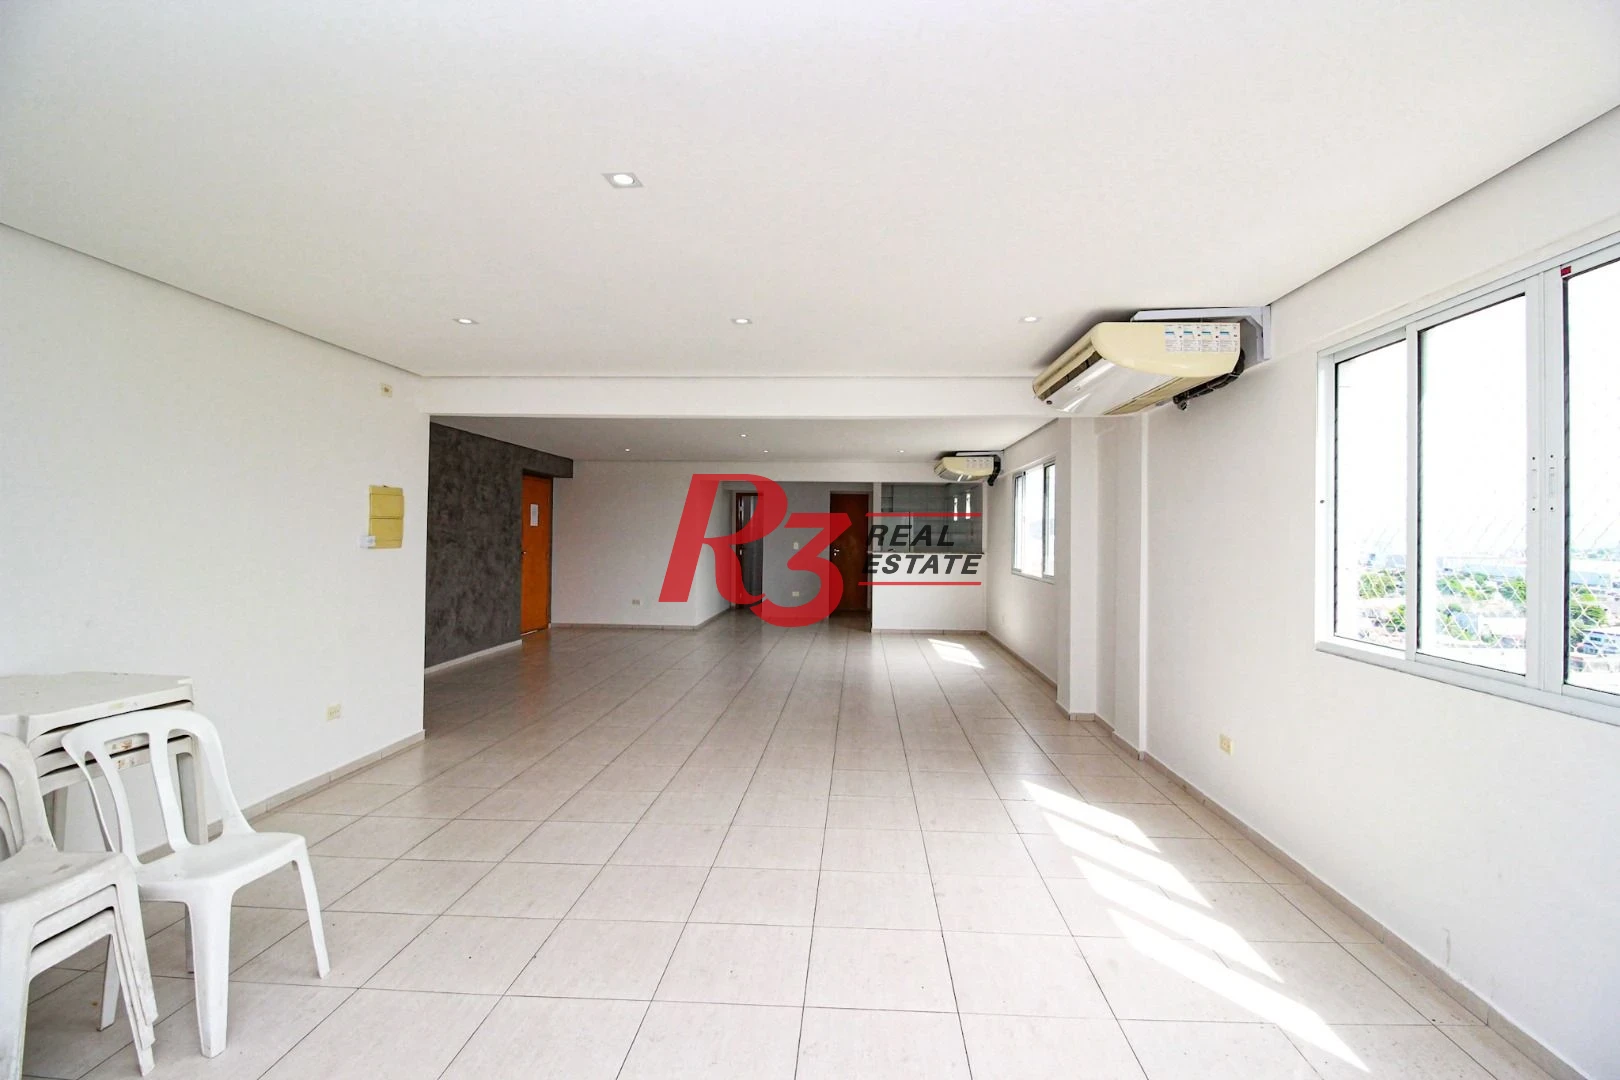 Apartamento com 1 dormitório à venda, 75 m² por R$ 370.000,00 - Aparecida - Santos/SP